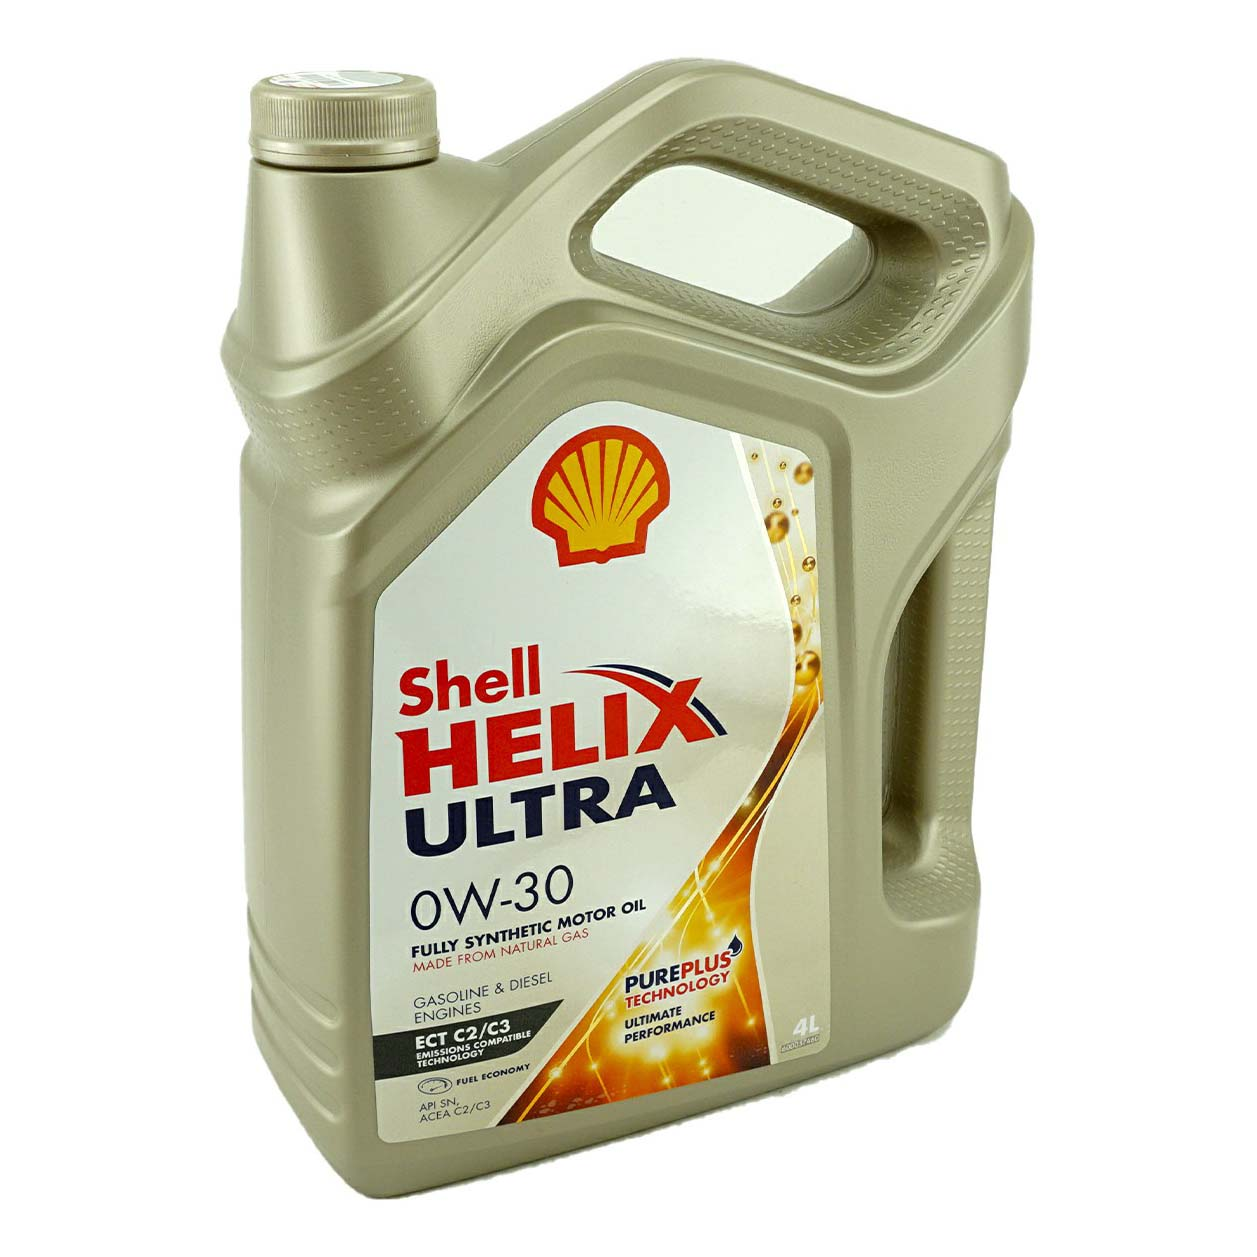 Моторное масло Shell синтетическое Helix Ultra ECT C2/C3 0W30 SN, VW 504.00/507.00 4л